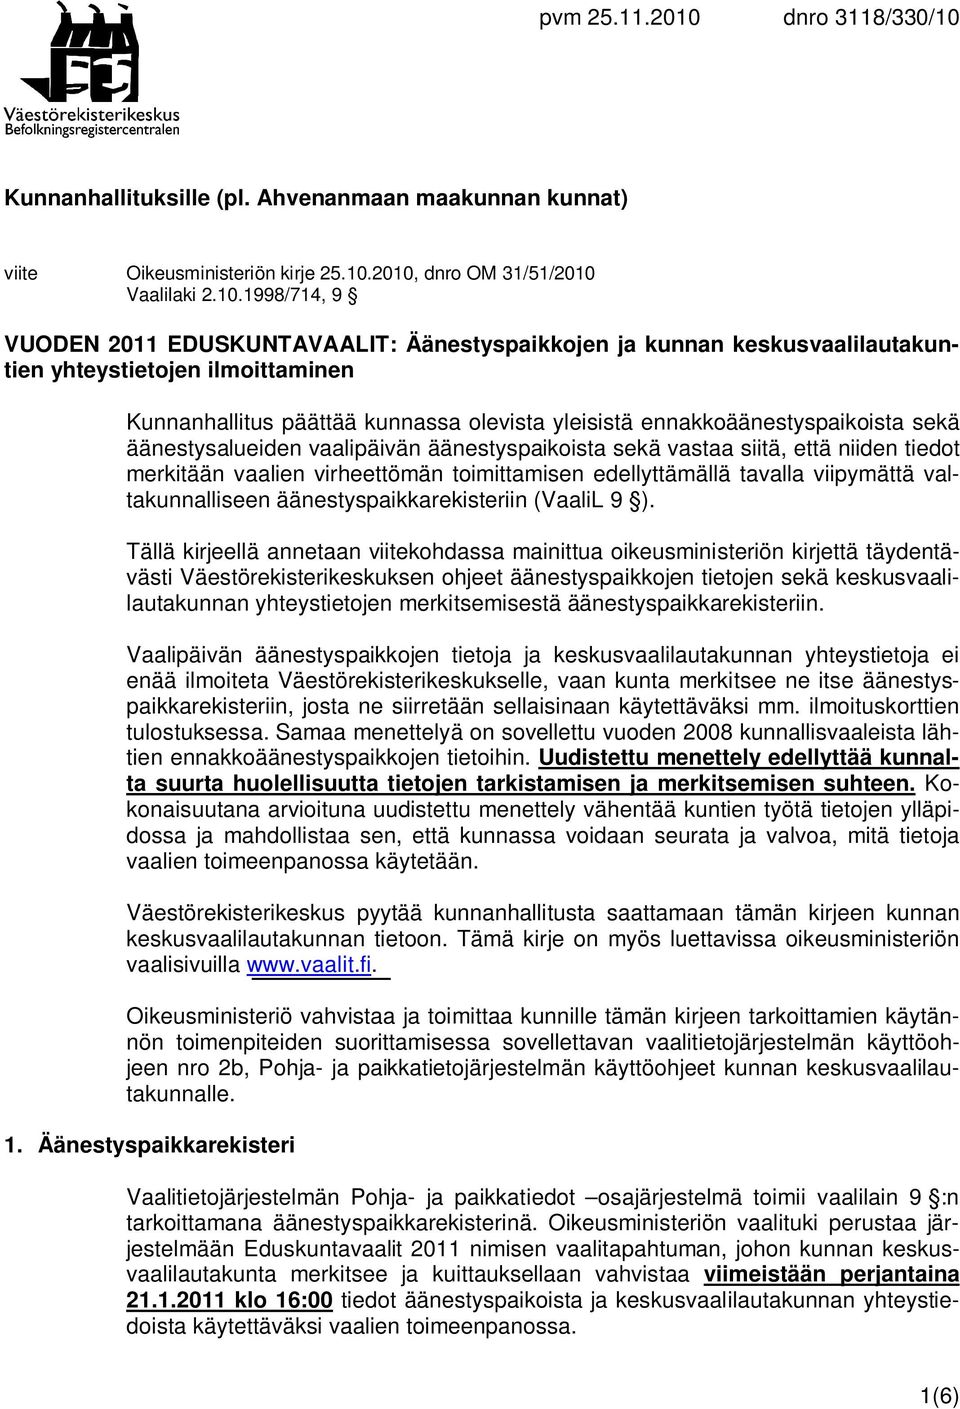 Kunnanhallituksille (pl. Ahvenanmaan maakunnan kunnat) viite Oikeusministeriön kirje 25.10.